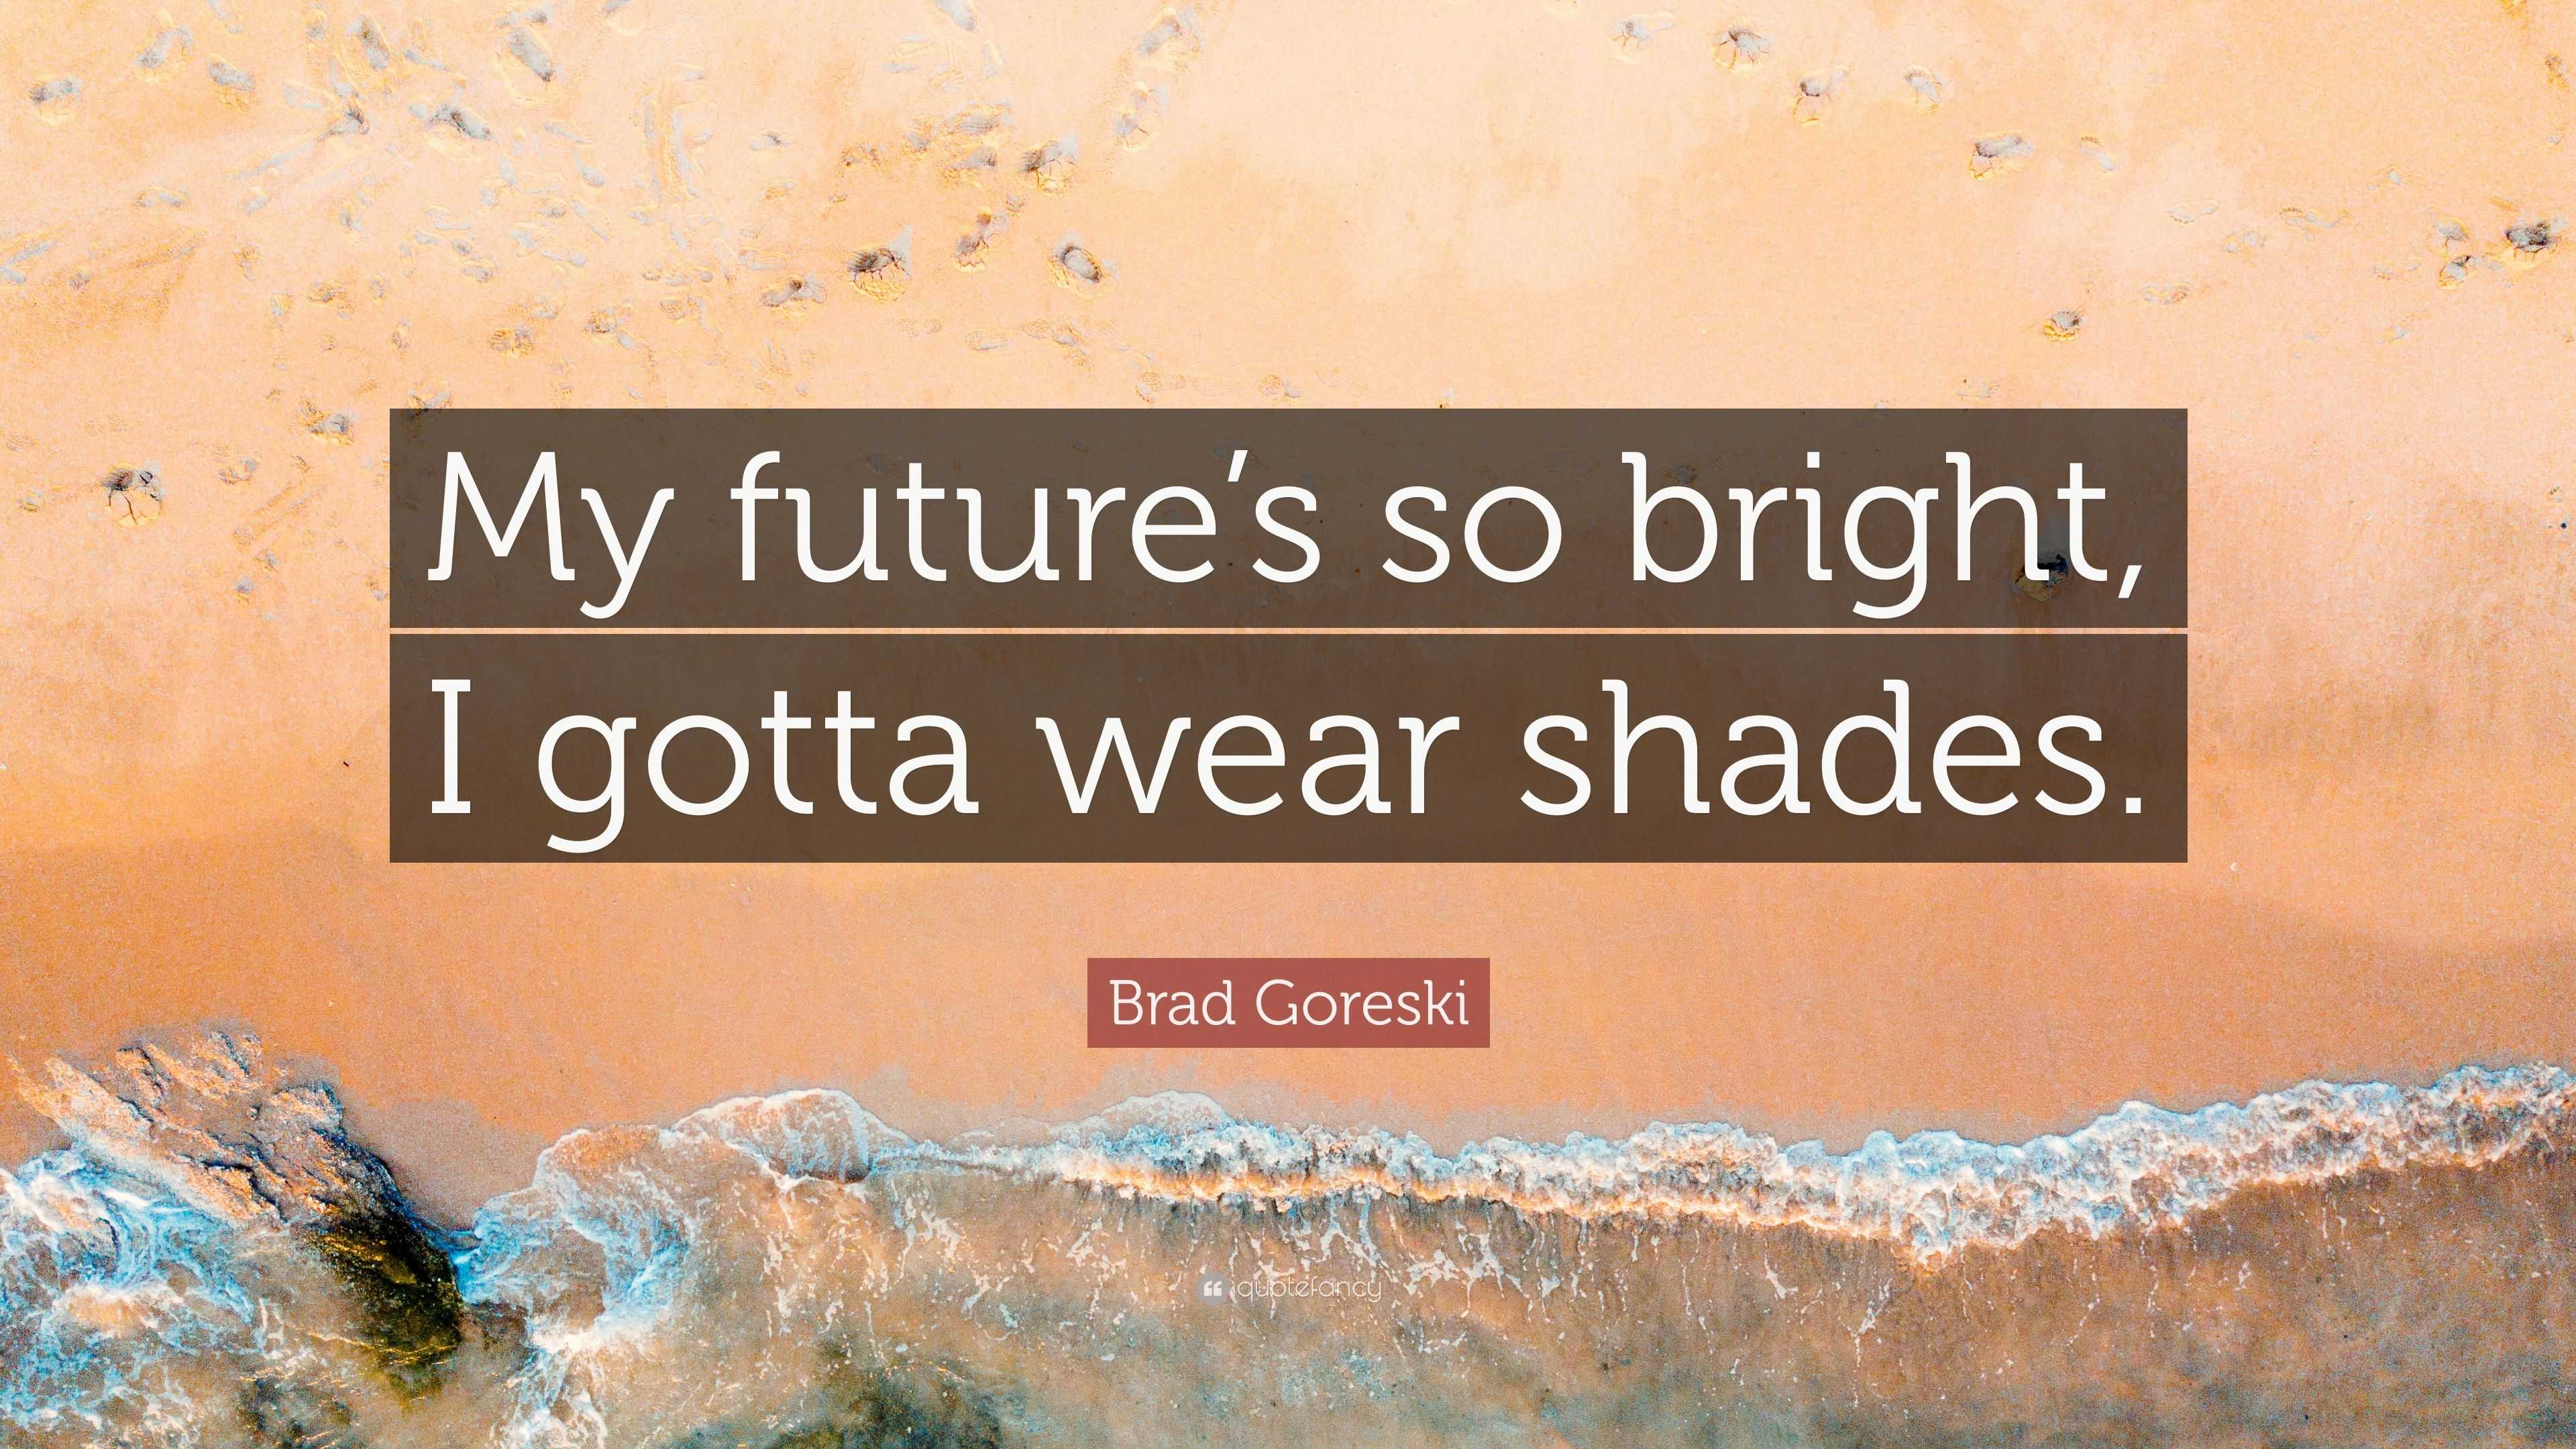 Brad Goreski Quote “My future’s so bright, I gotta wear shades.”